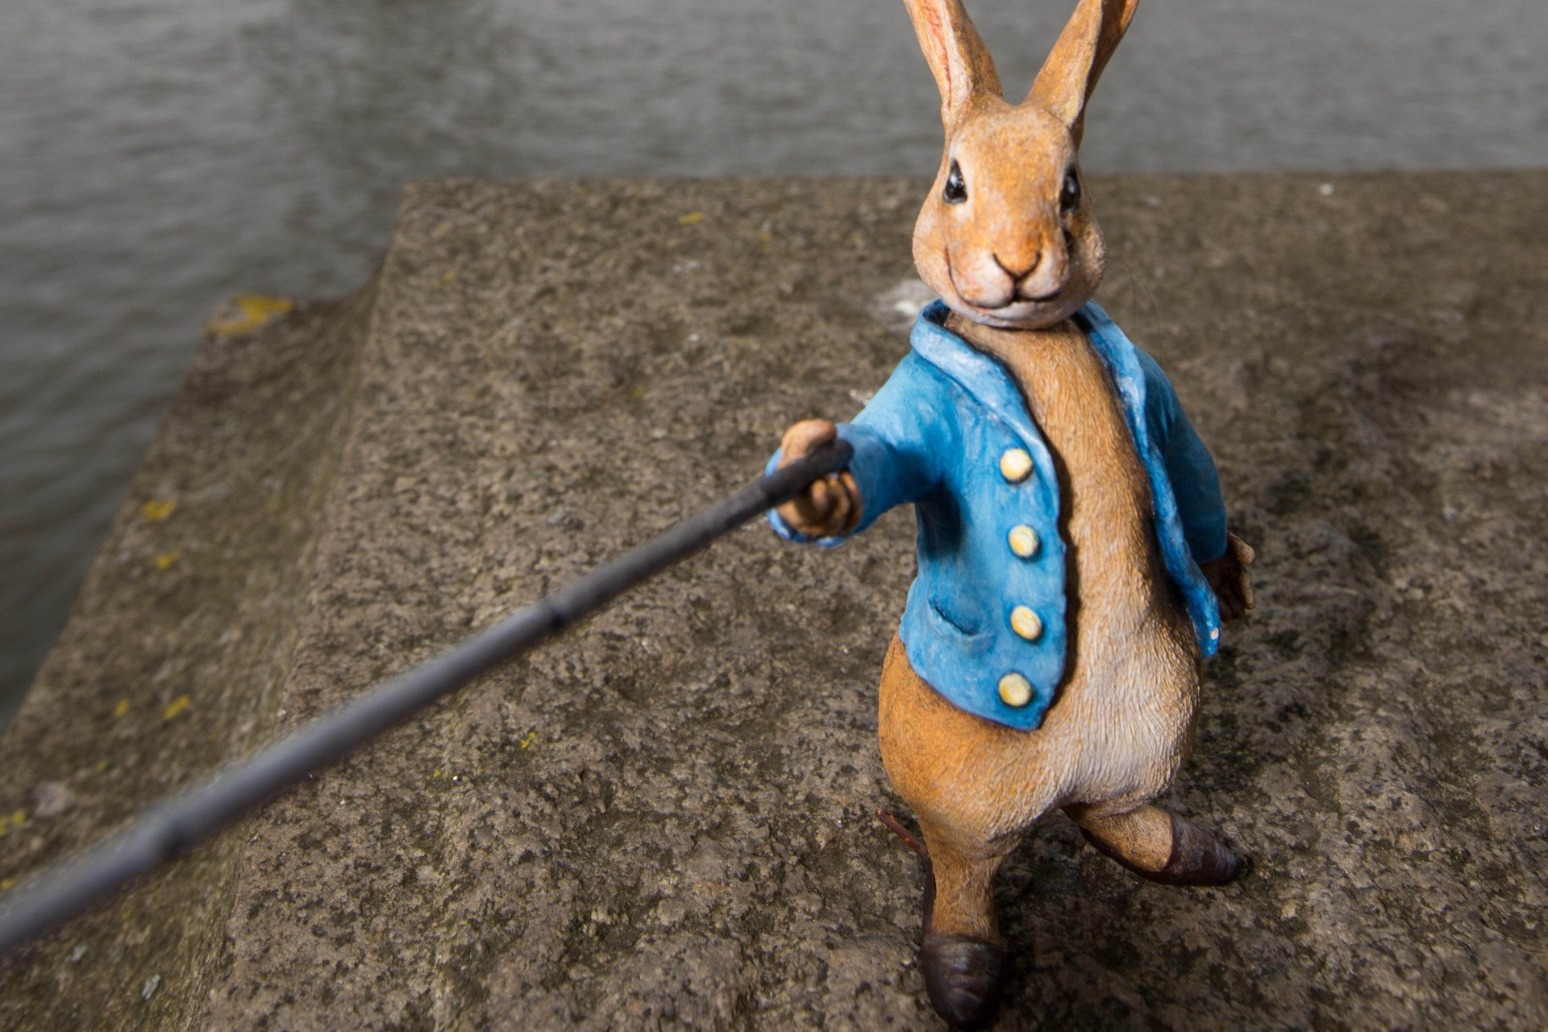 Beatrix Potter’s Peter Rabbit inspires garden initiative marking anniversary 